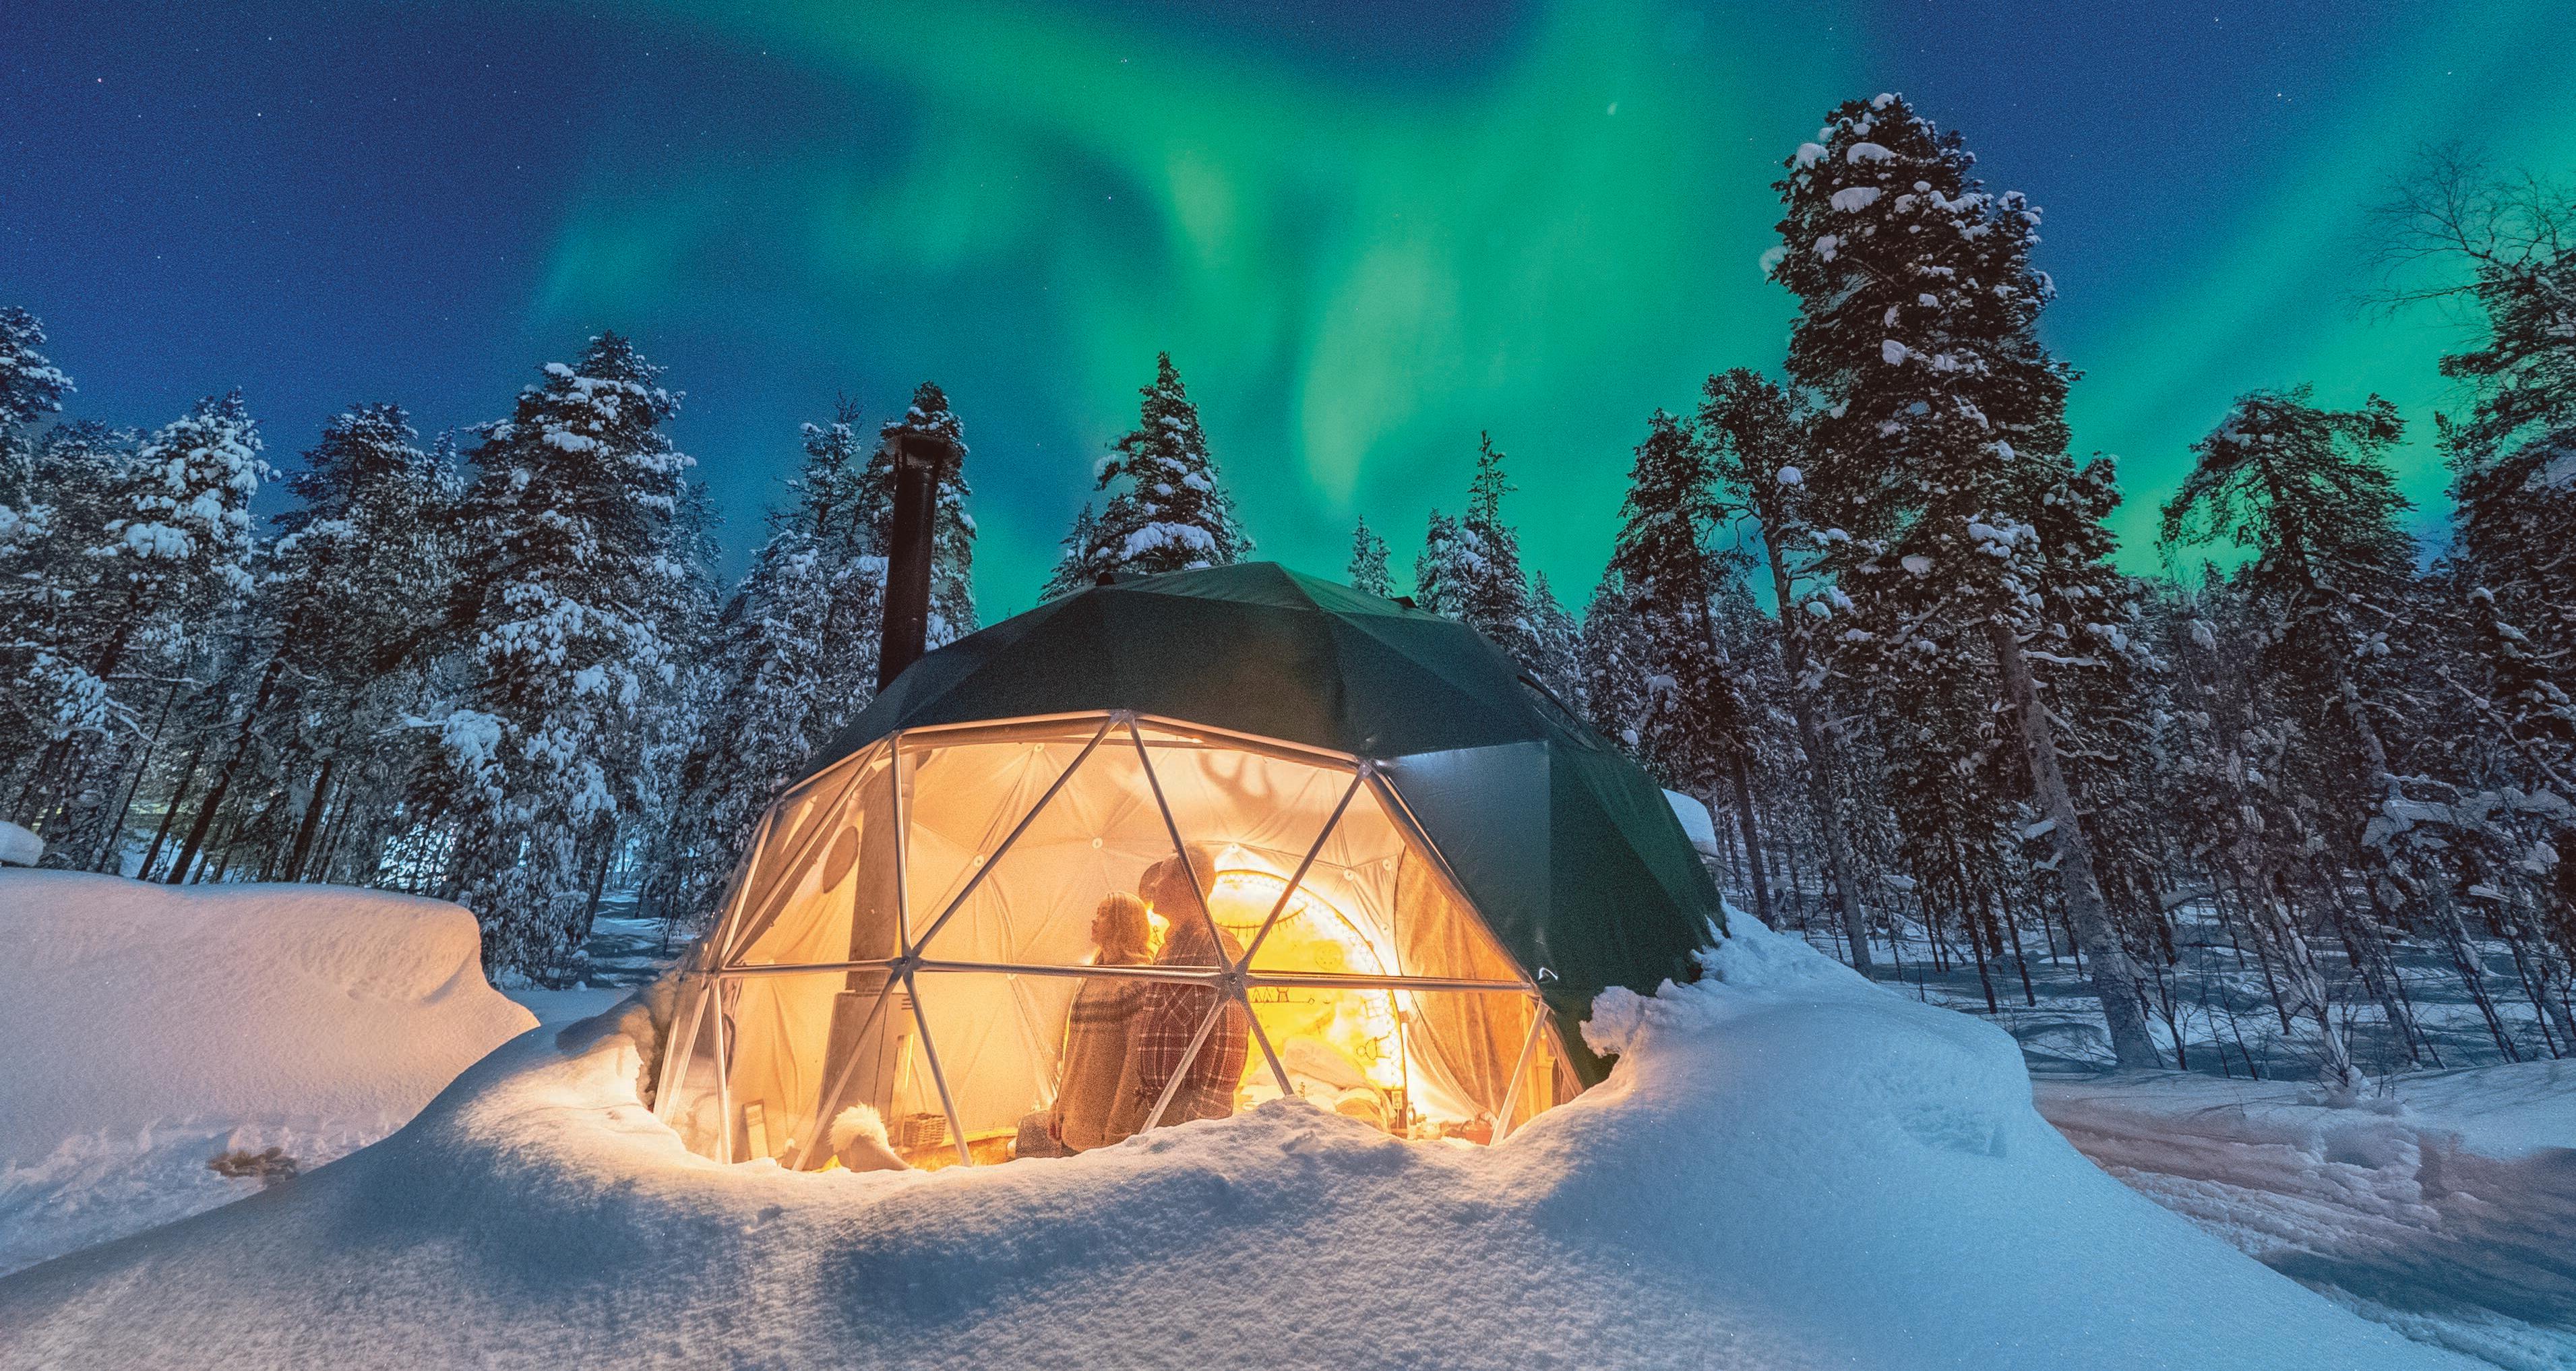 Sleep under the Northern Lights | Visit Finland